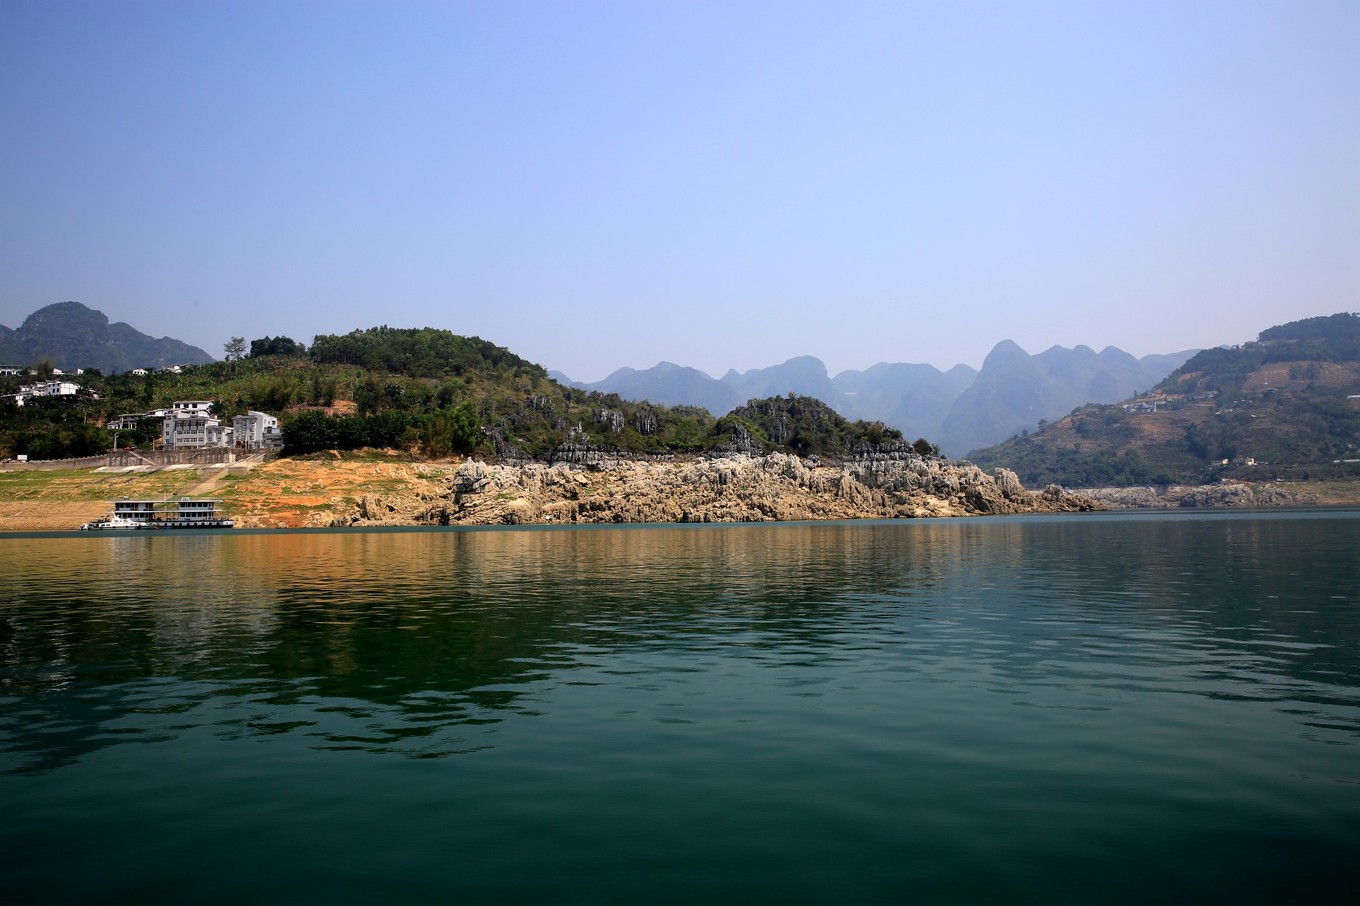 万峰湖鱼肥水美，钓者云集，被誉为“野钓者的乐园”